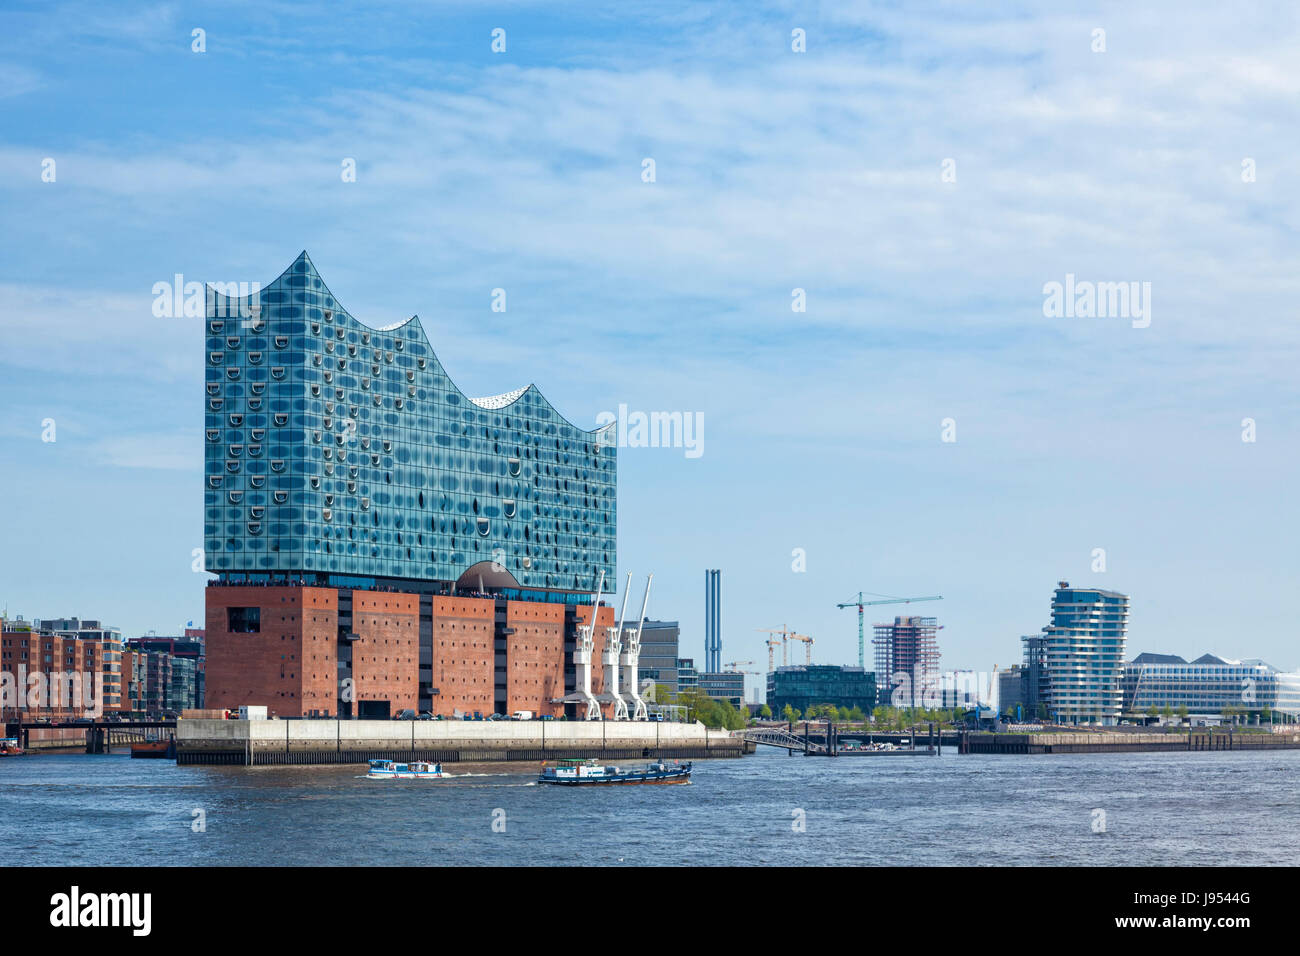 Hamburg, Deutschland - 17. Mai 2017: The Elbe Philharmonic Hall oder Elbphilharmonie, Konzertsaal im Stadtteil HafenCity Hamburg Stockfoto